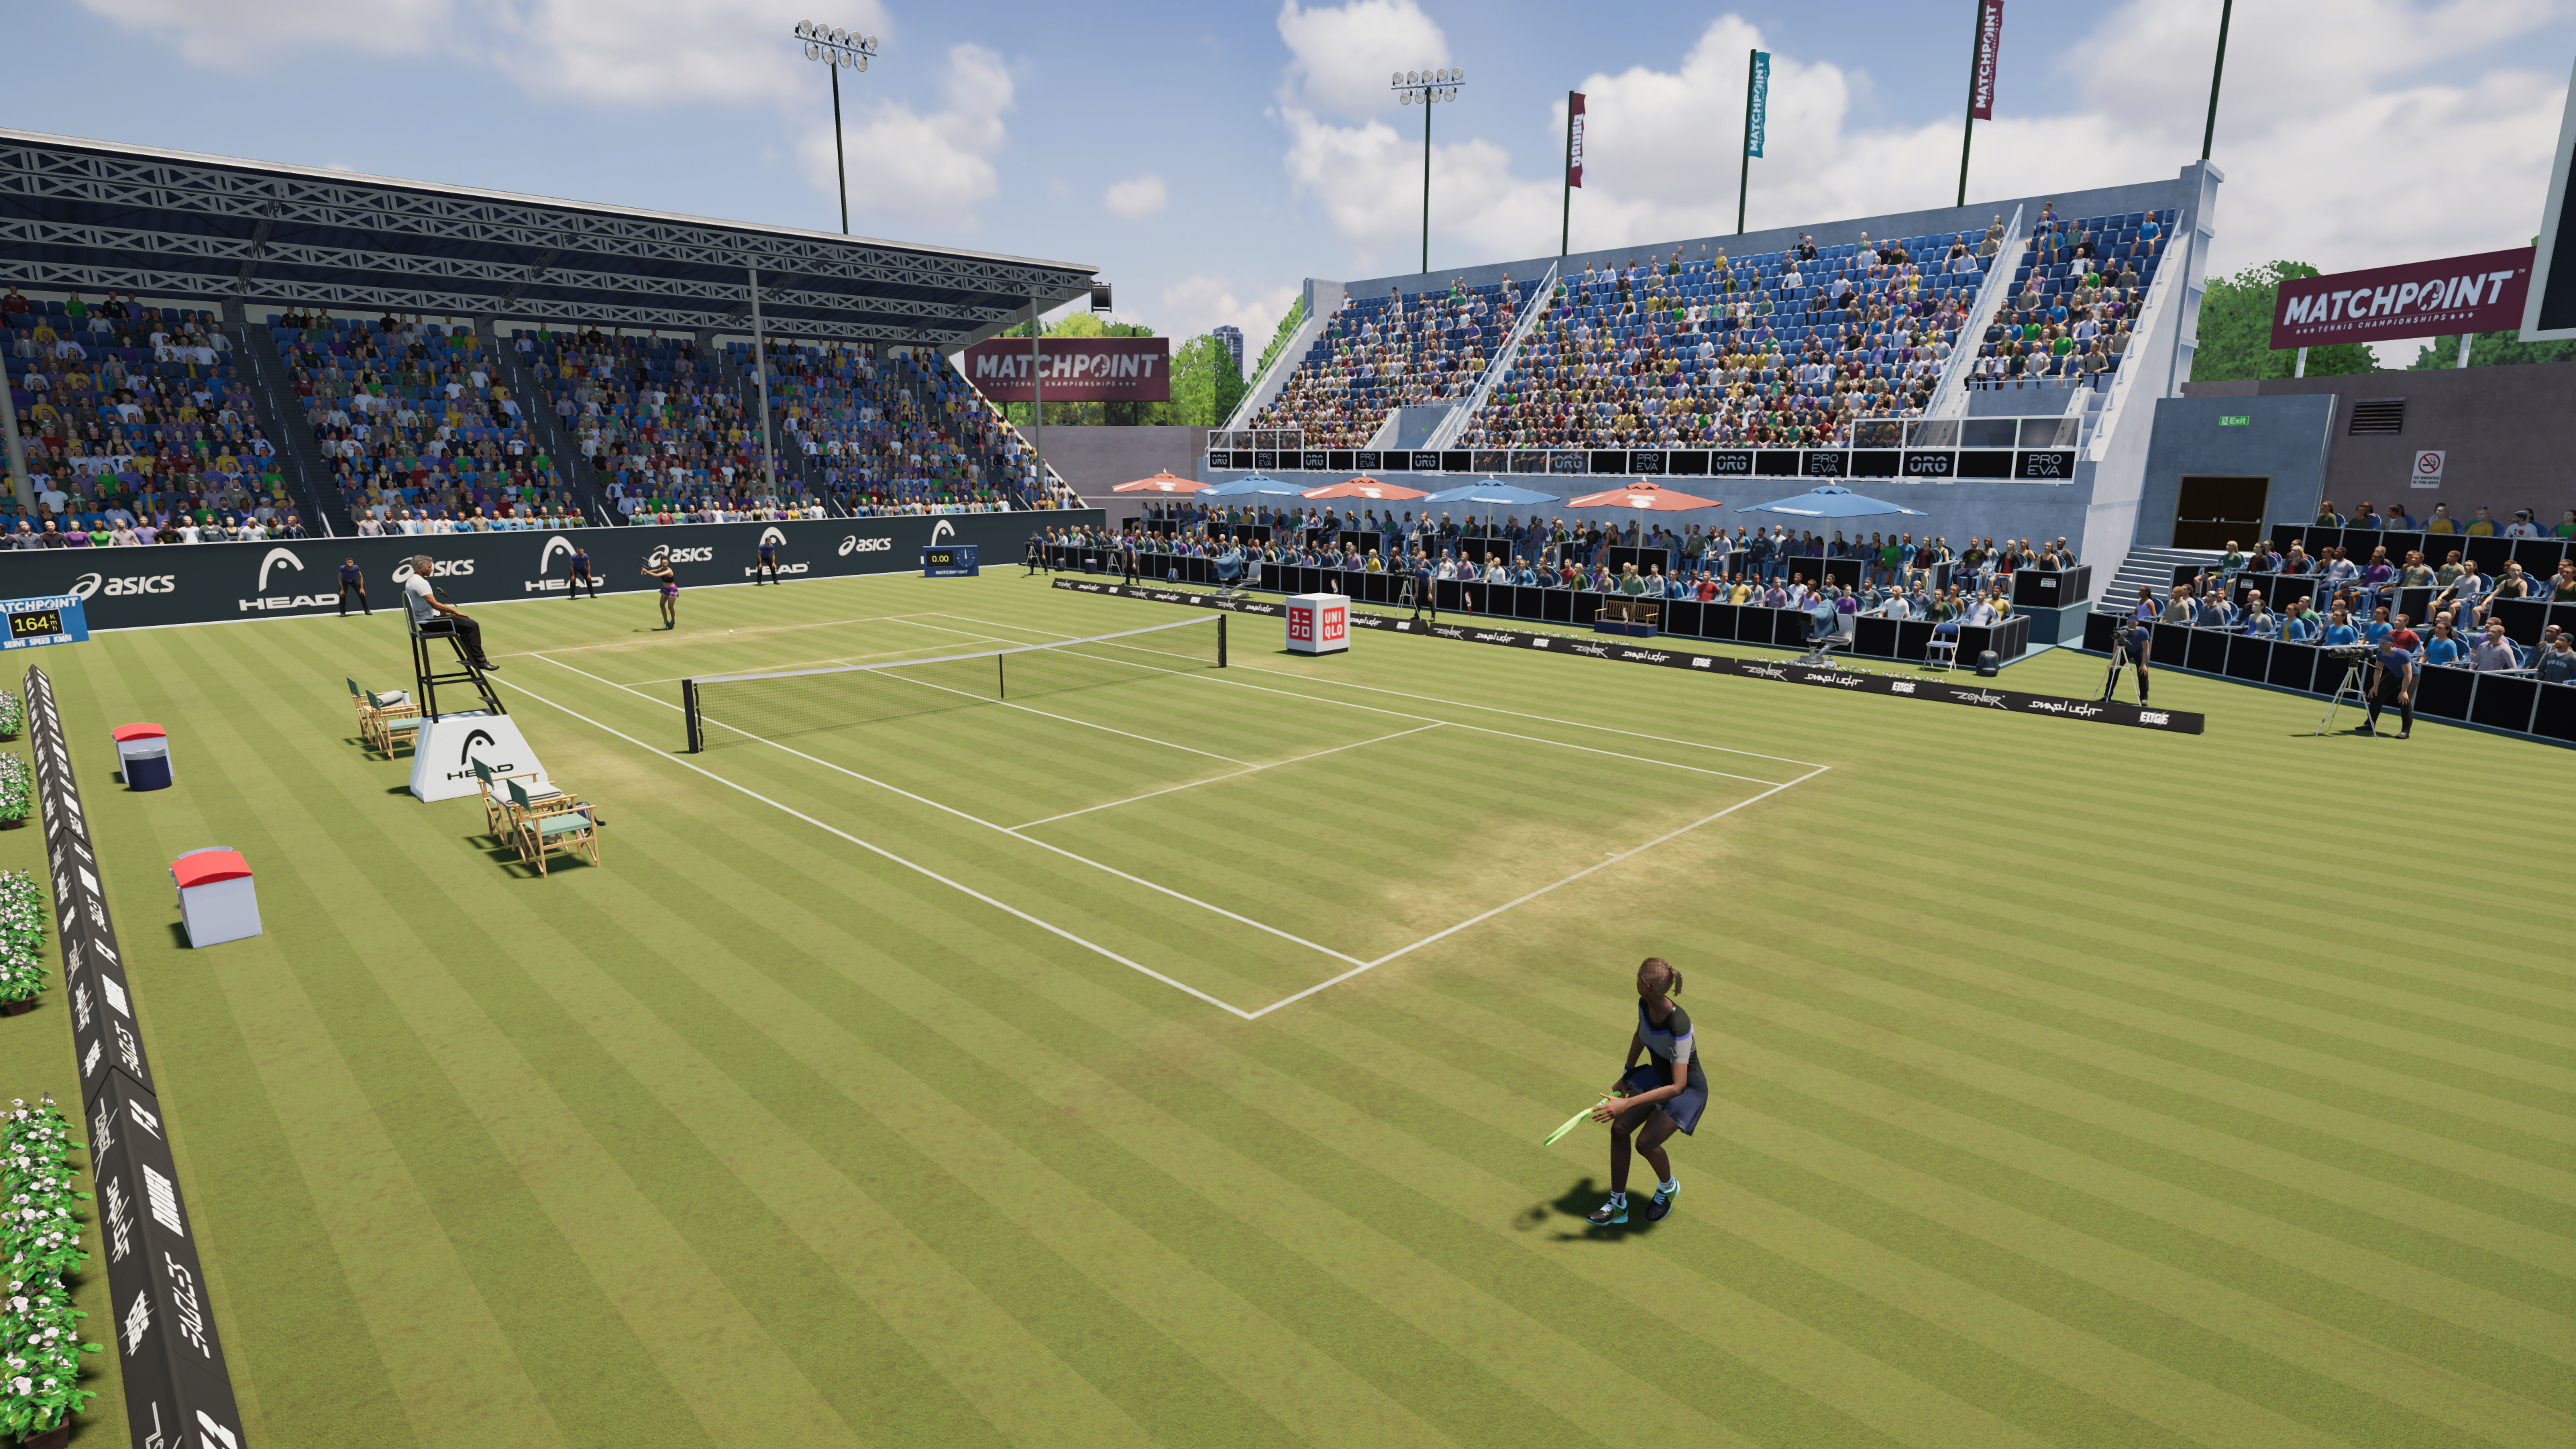 Matchpoint - Tennis Championships, Aplicações de download da Nintendo  Switch, Jogos